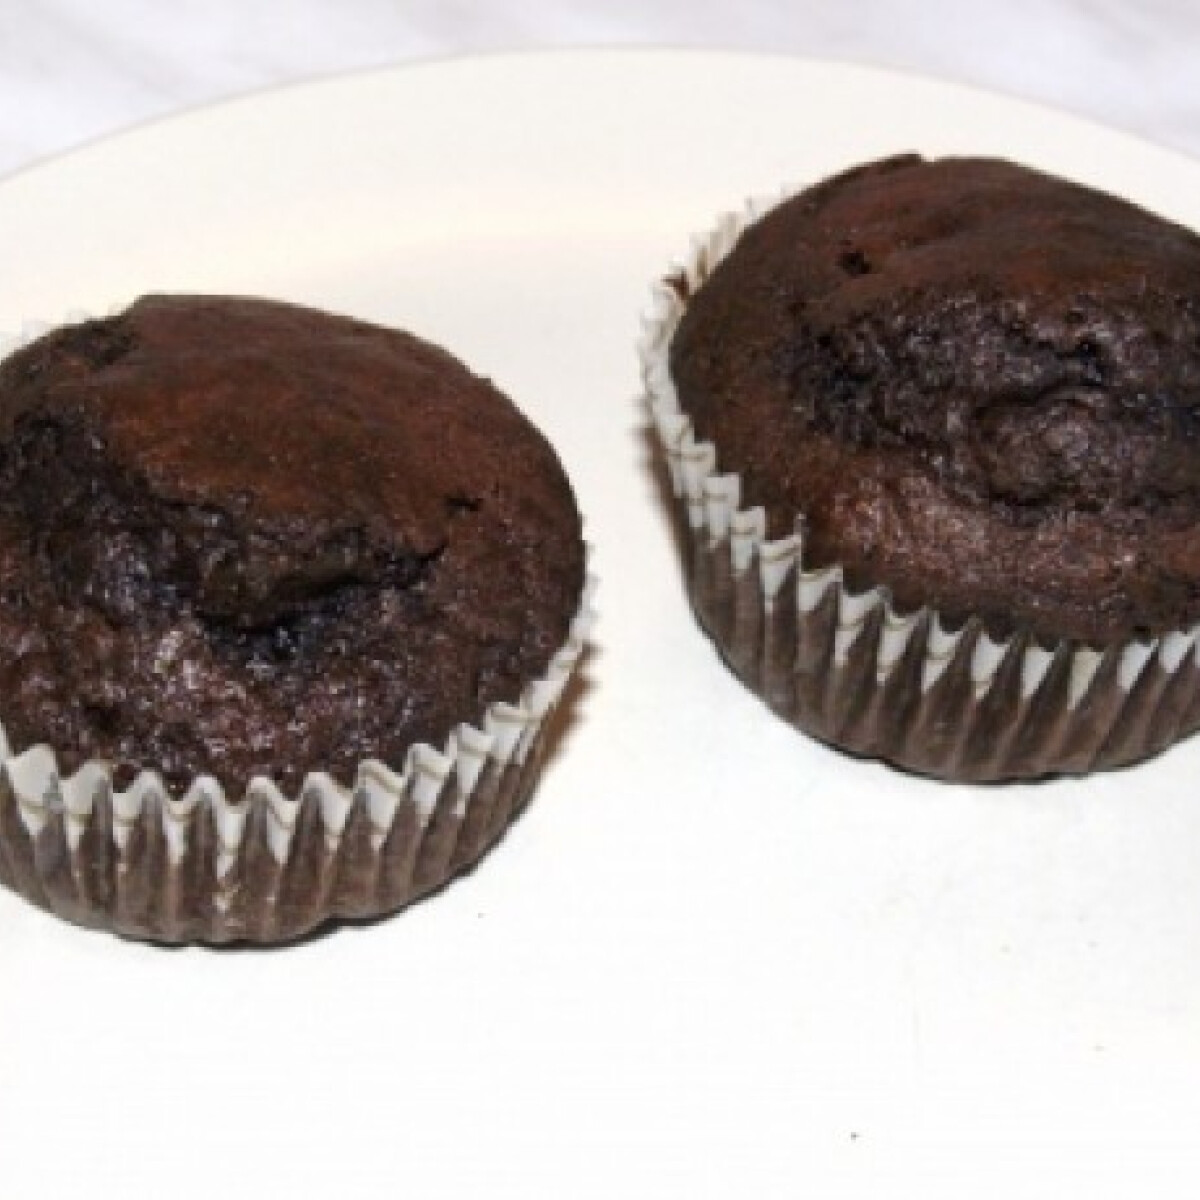 Ezen a képen: "Nagyoncsokis" muffin